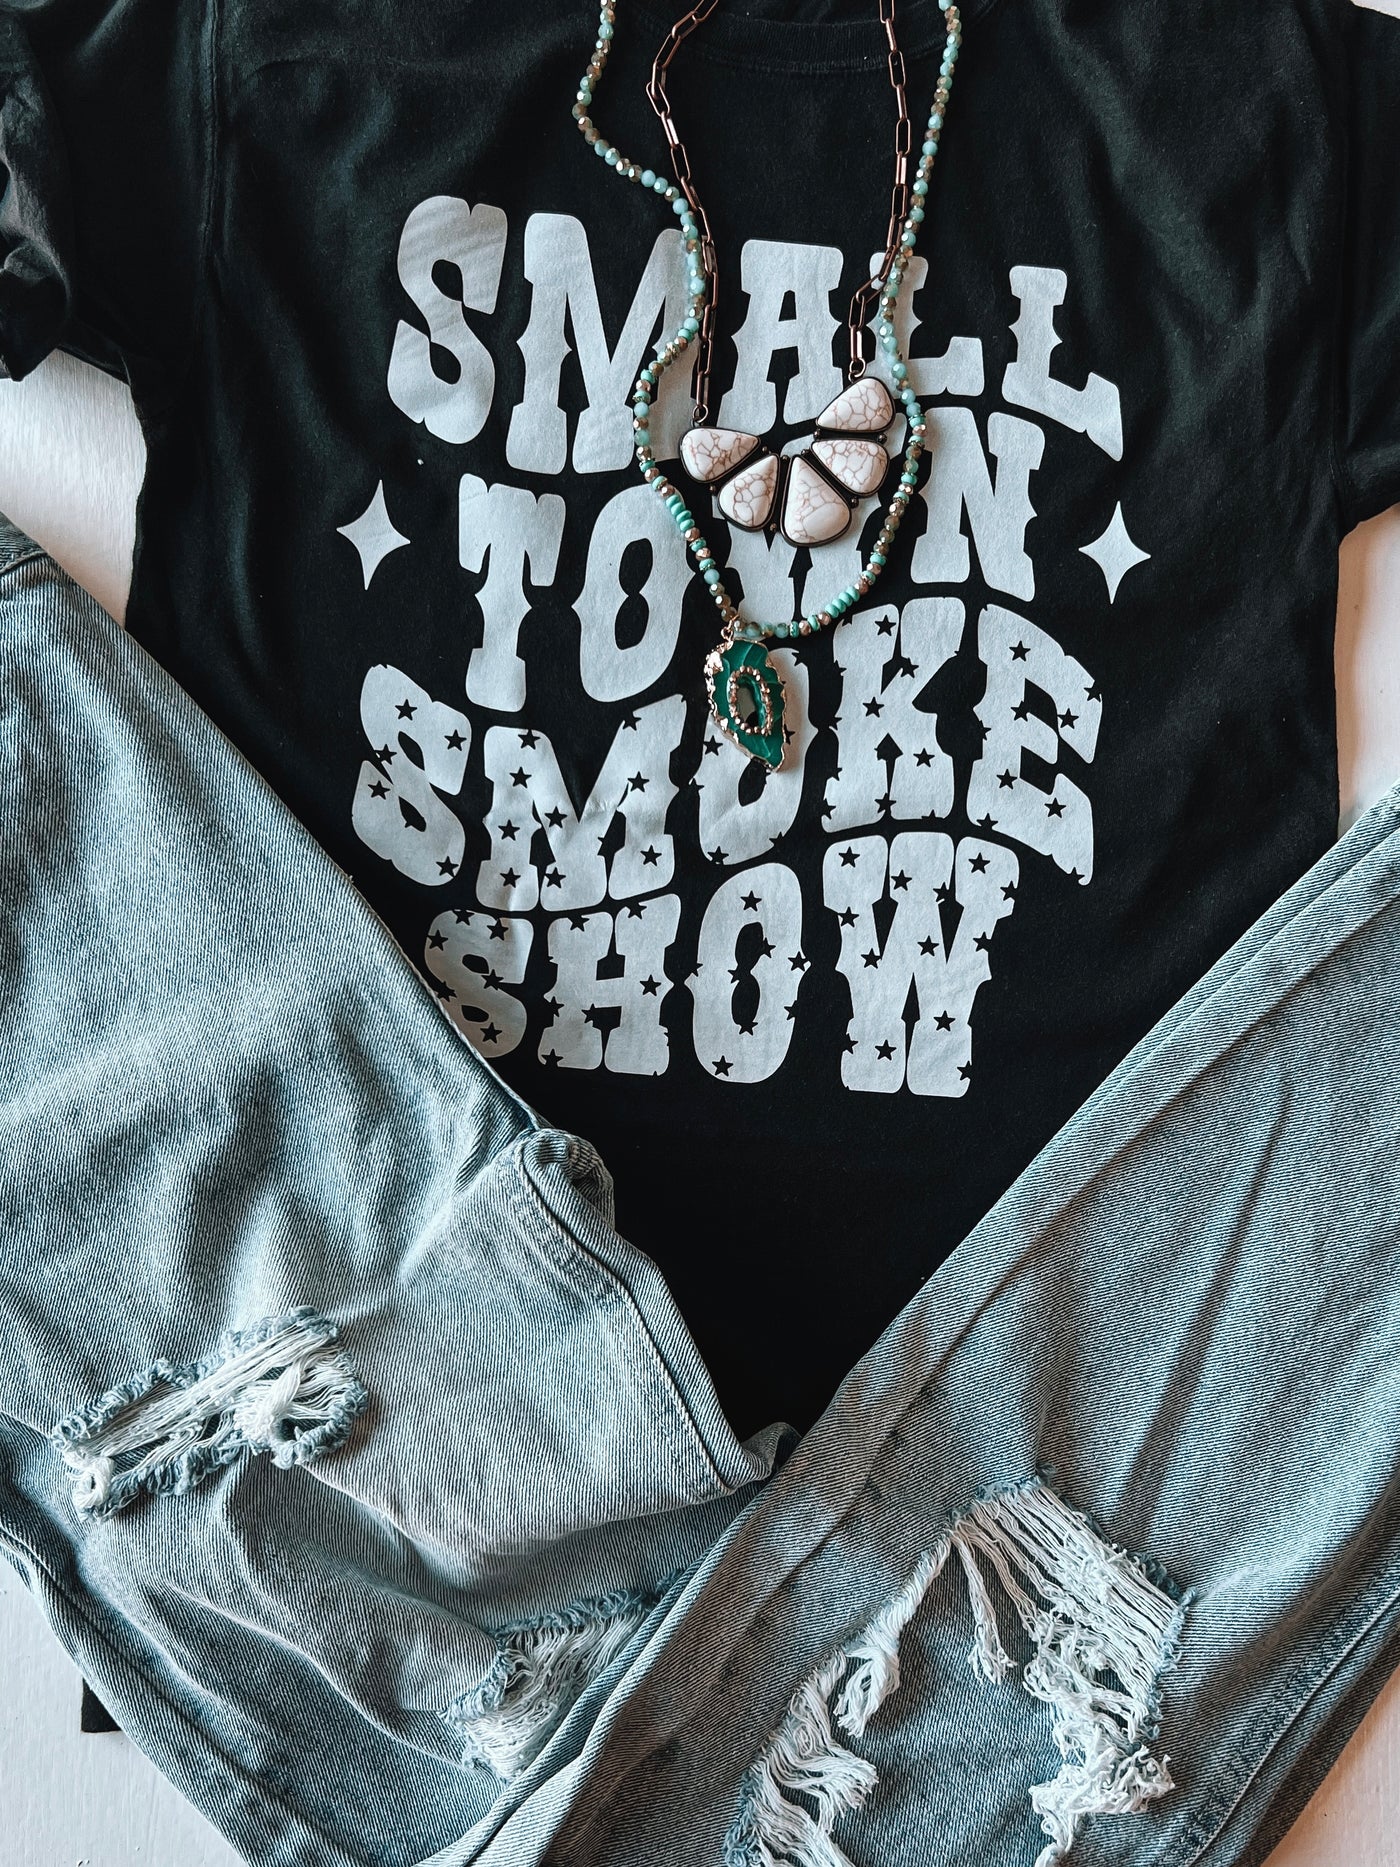 Smokeshow Tee/Sweatshirt